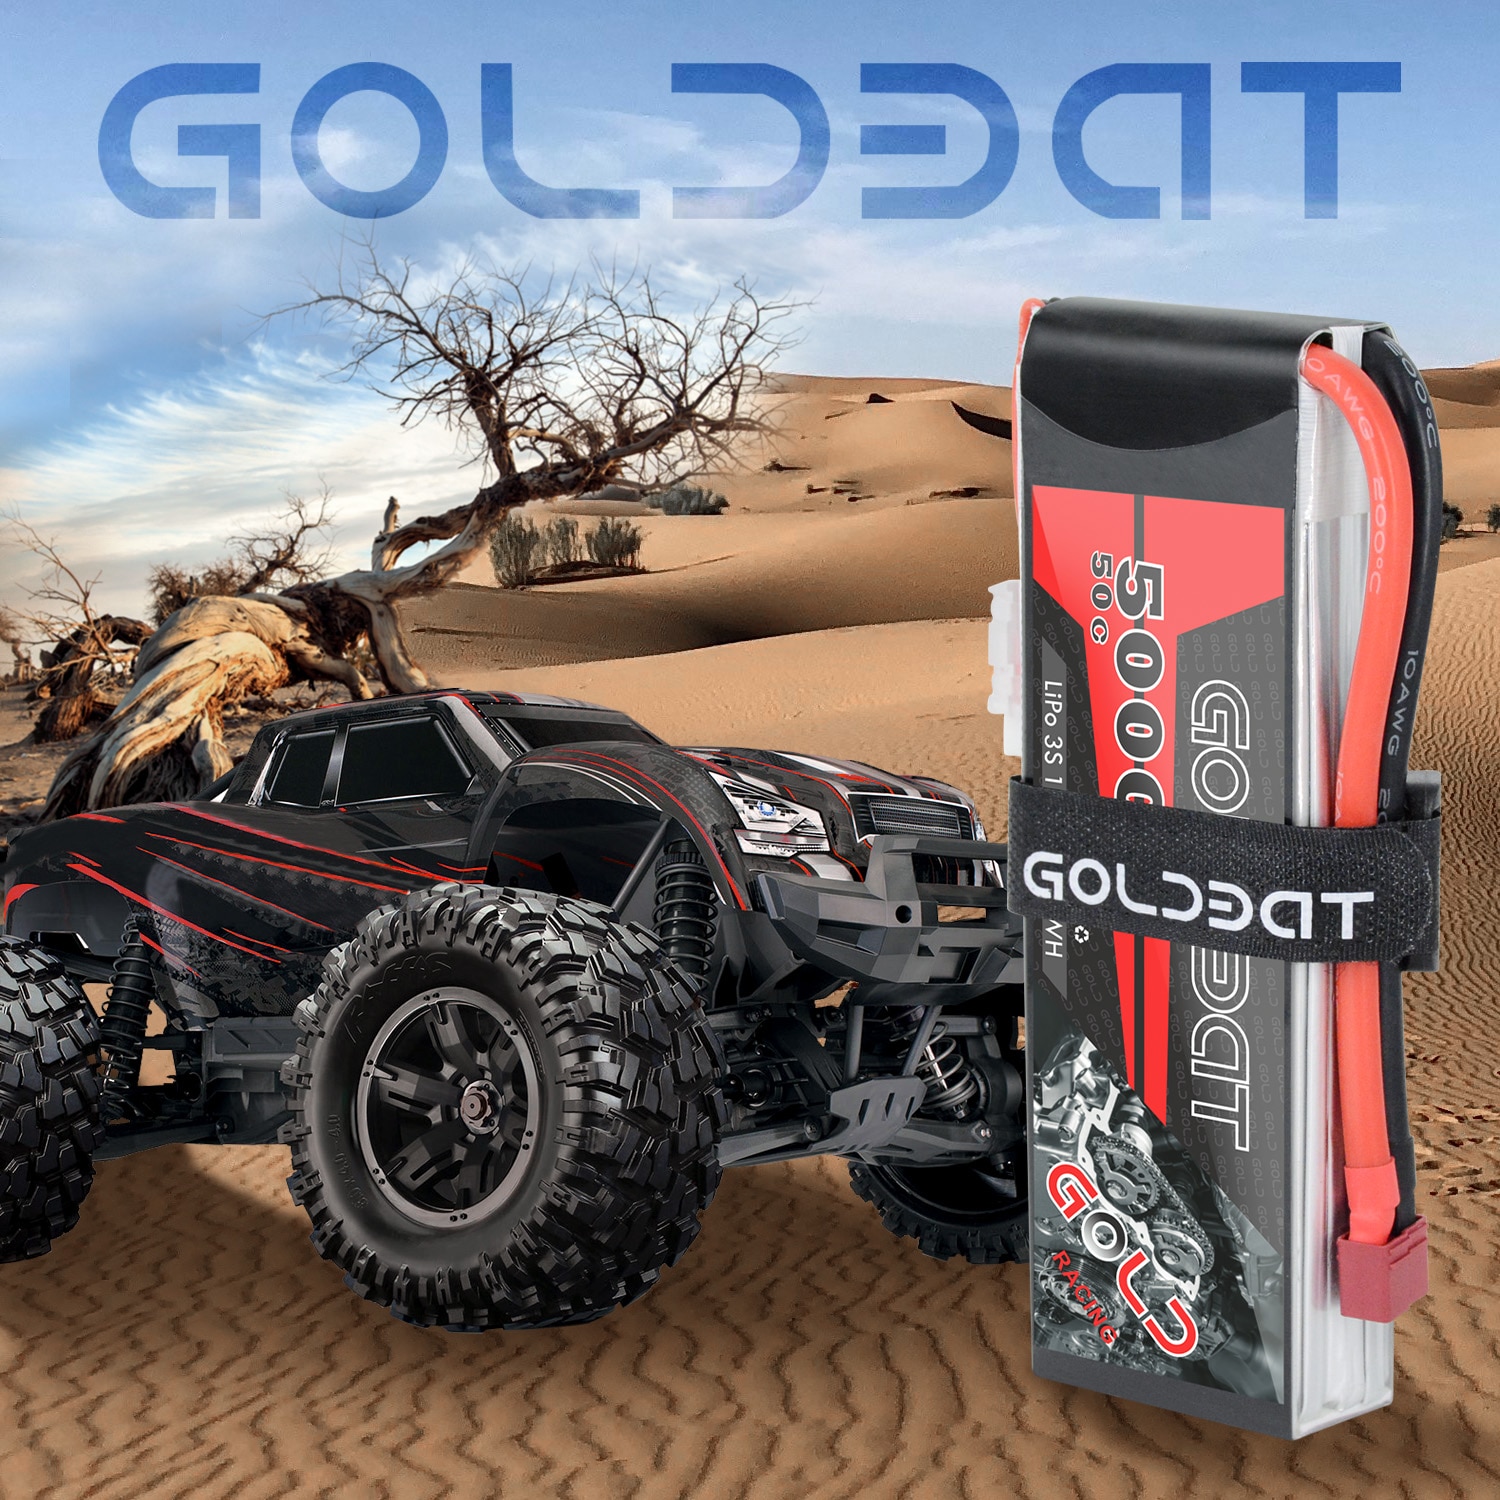 GOLDBAT 5000mAh 11.1V 3S 50C Lipo RC Batterij Hard Case met Deans T en TRX Connector voor Traxxas Axiale RC Truggy Racing